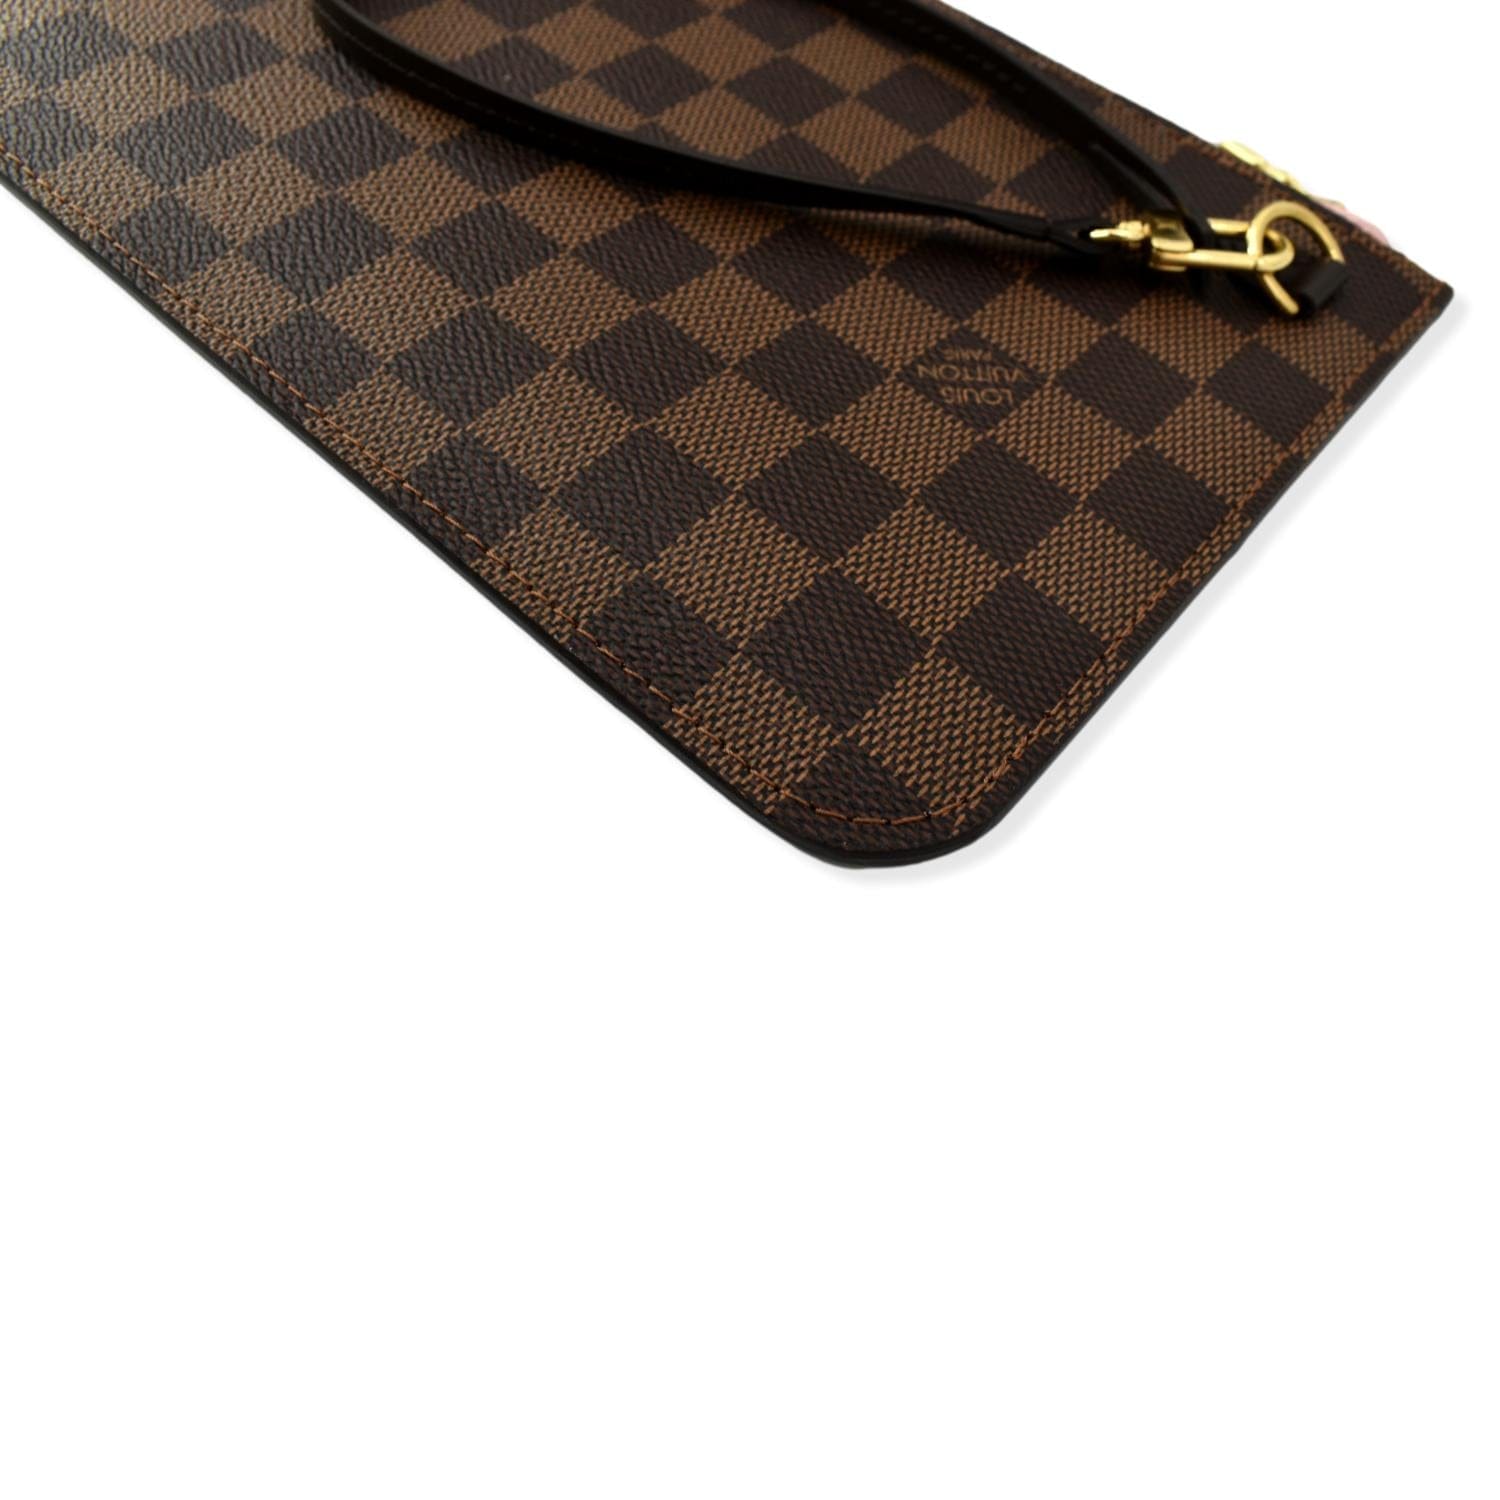 100% Authentic Louis Vuitton Neverfull Damier Ebene Wristlet Pouch/Clutch  Bag